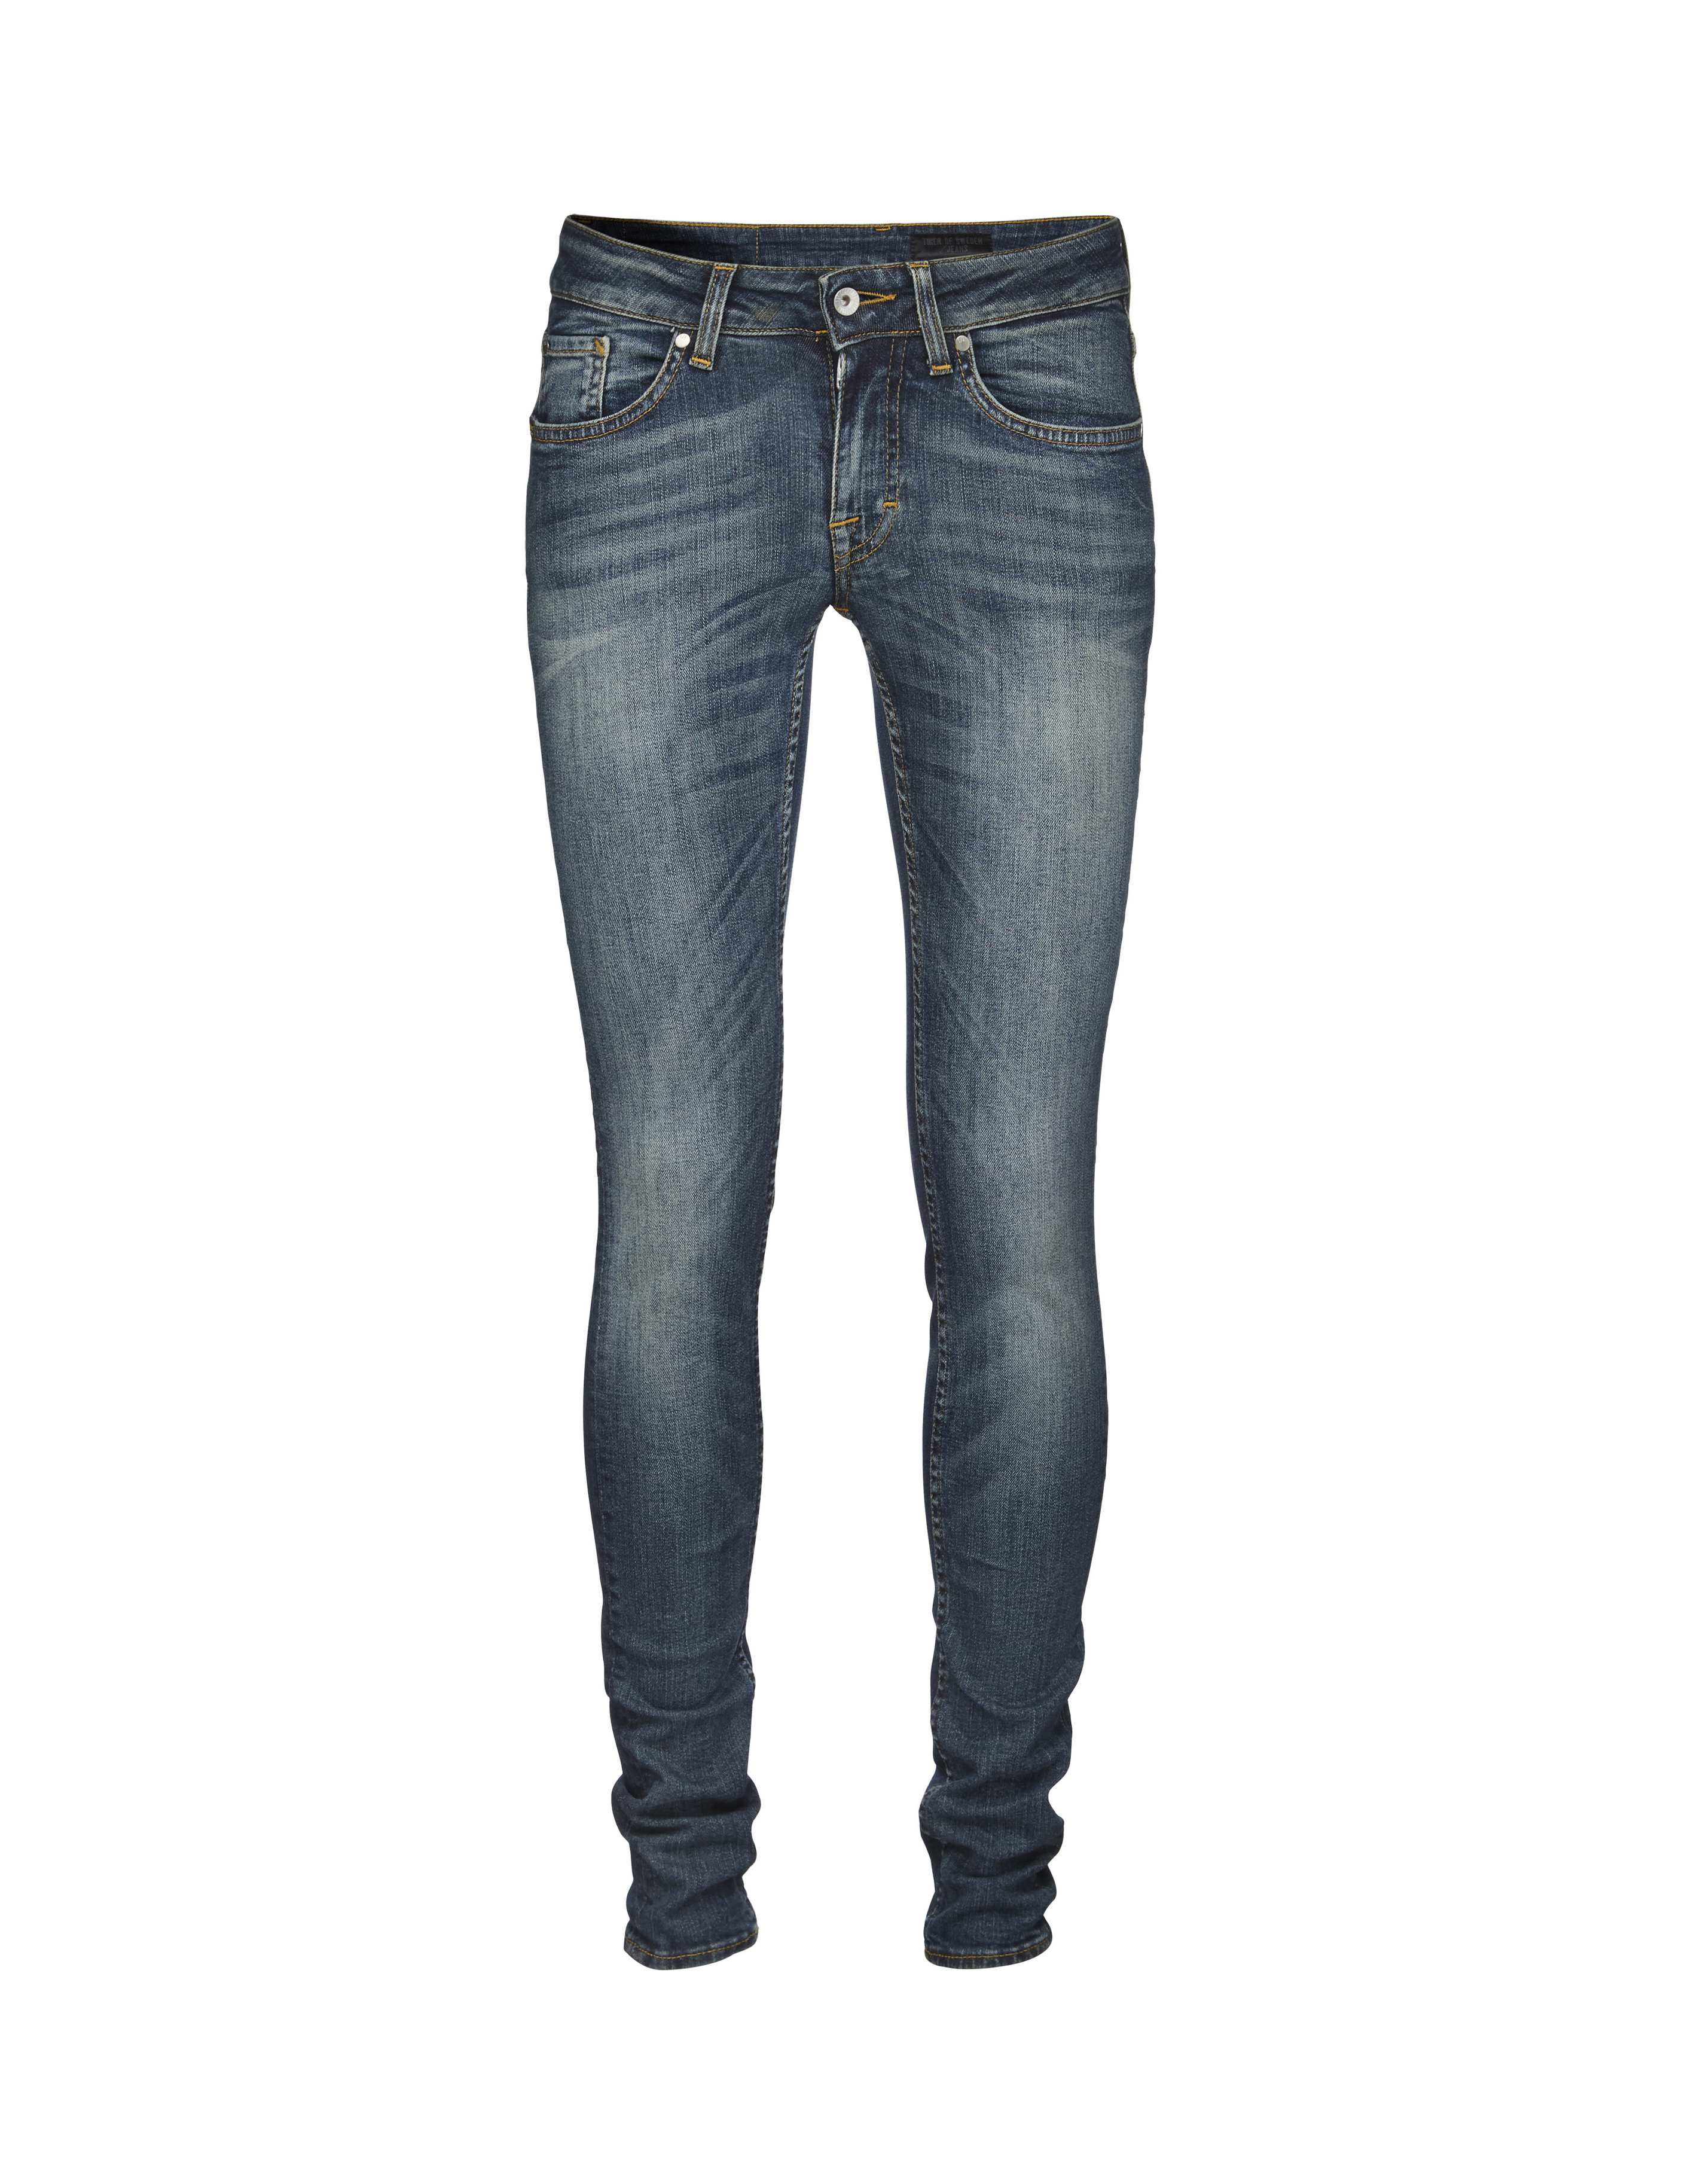 of Sweden Jeans, Slender jeans,